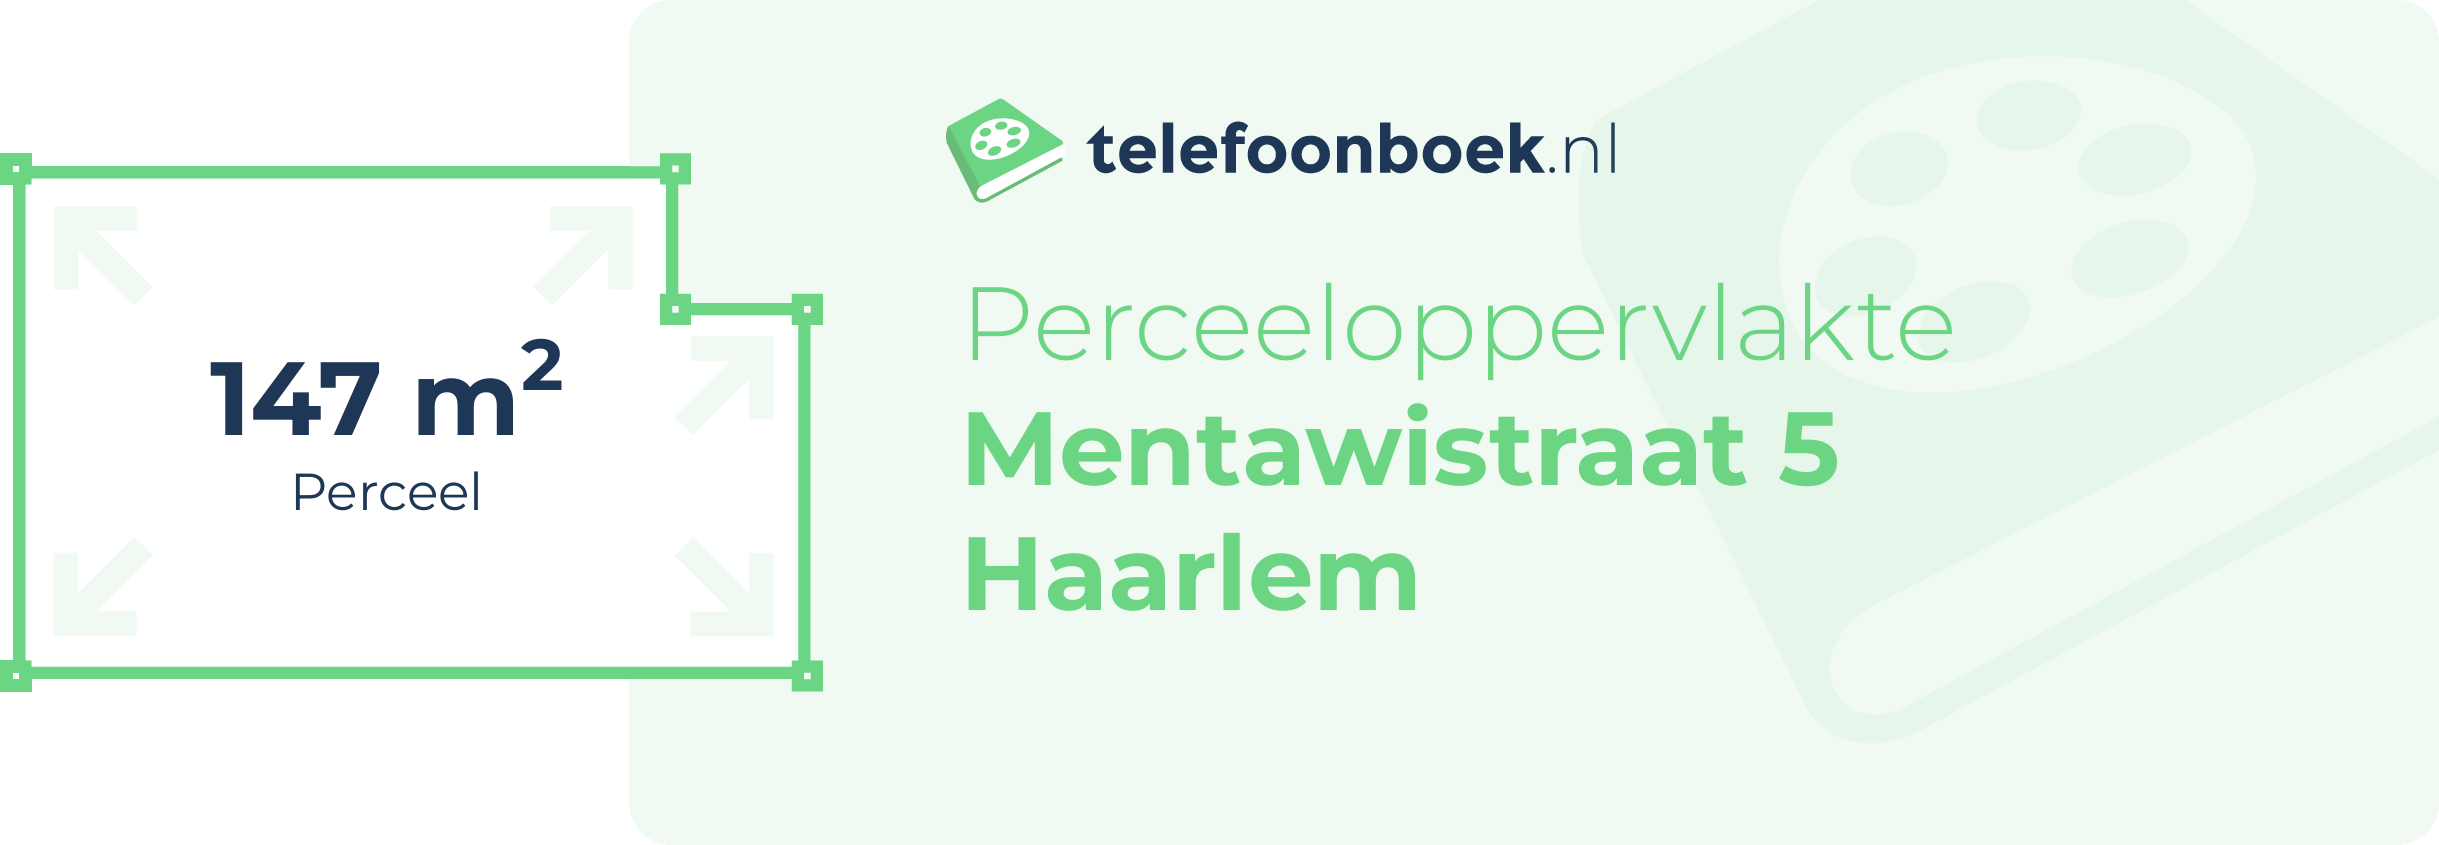 Perceeloppervlakte Mentawistraat 5 Haarlem